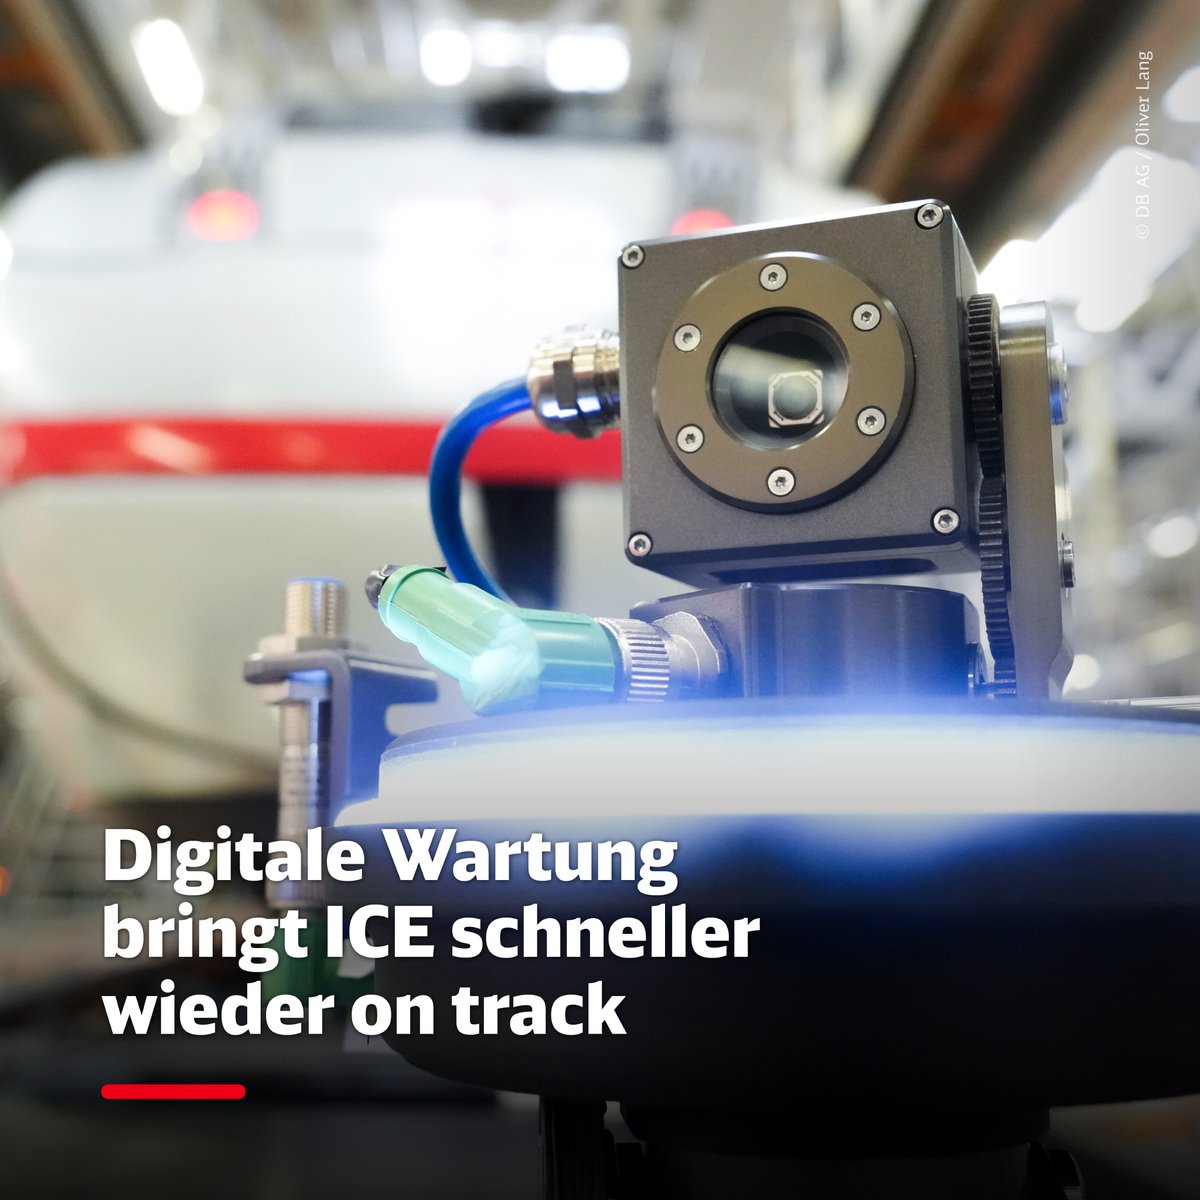 Mehr Effizienz durch digitale Wartung: Mit Hilfe von #Robotern und #KI werden ICE jetzt auch digital geprüft. Für das E-Check genannte Verfahren investiert die #DB 55 Millionen Euro. So sind die #ICE schneller für unsere Fahrgäste wieder im Einsatz. deutschebahn.com/de/presse/pres…